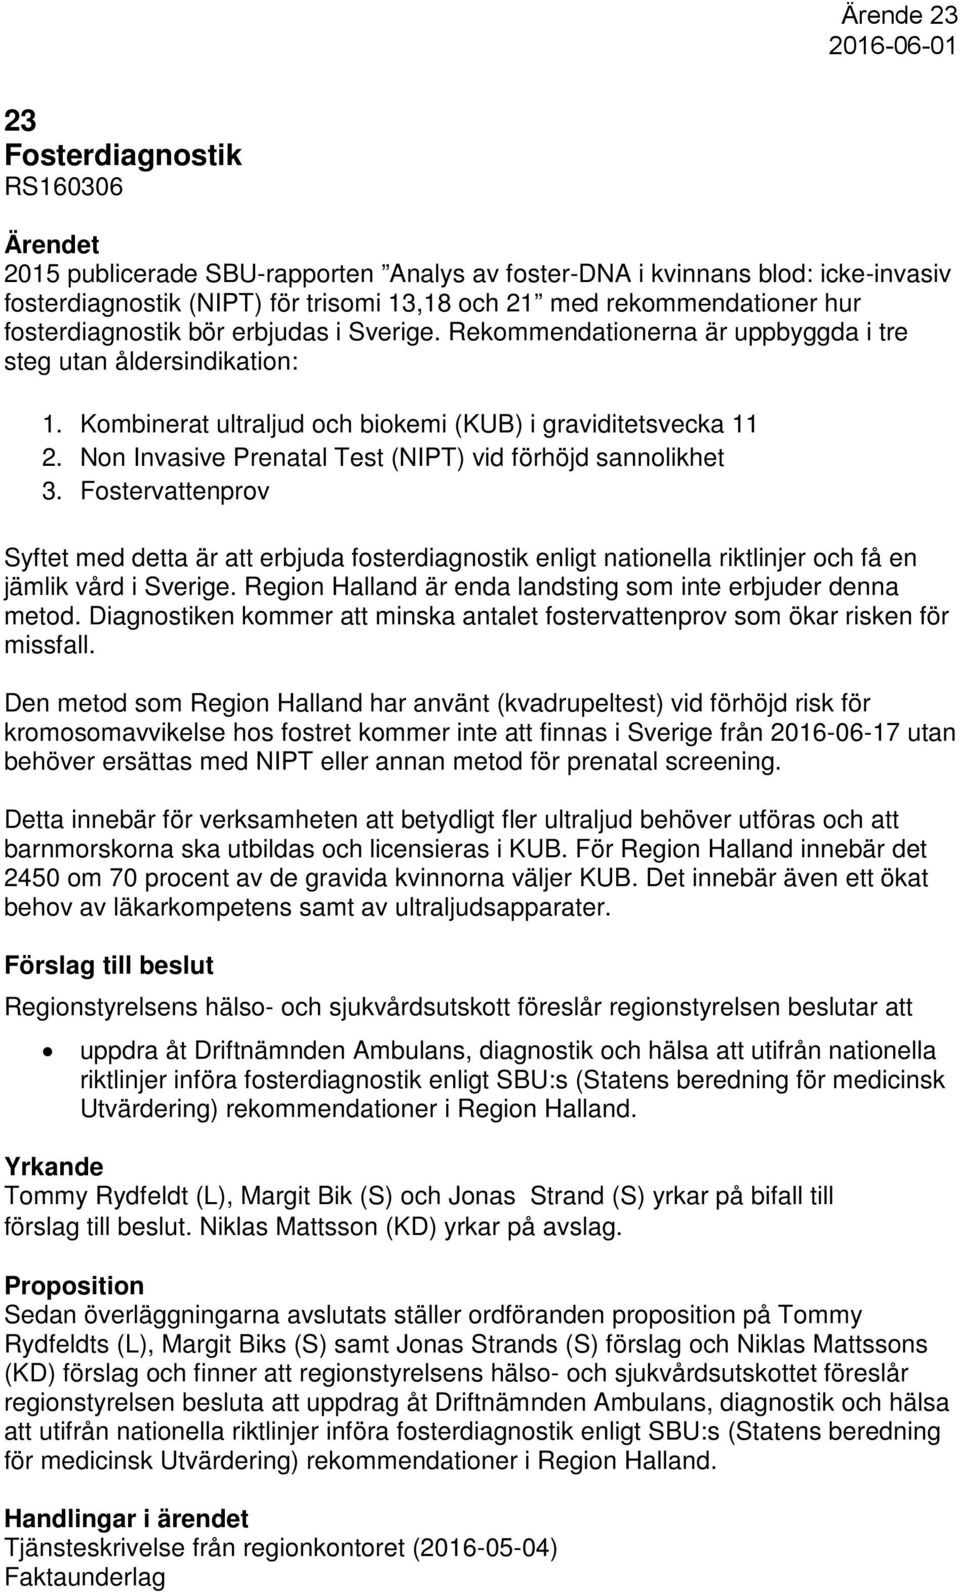 Non Invasive Prenatal Test (NIPT) vid förhöjd sannolikhet 3. Fostervattenprov Syftet med detta är att erbjuda fosterdiagnostik enligt nationella riktlinjer och få en jämlik vård i Sverige.